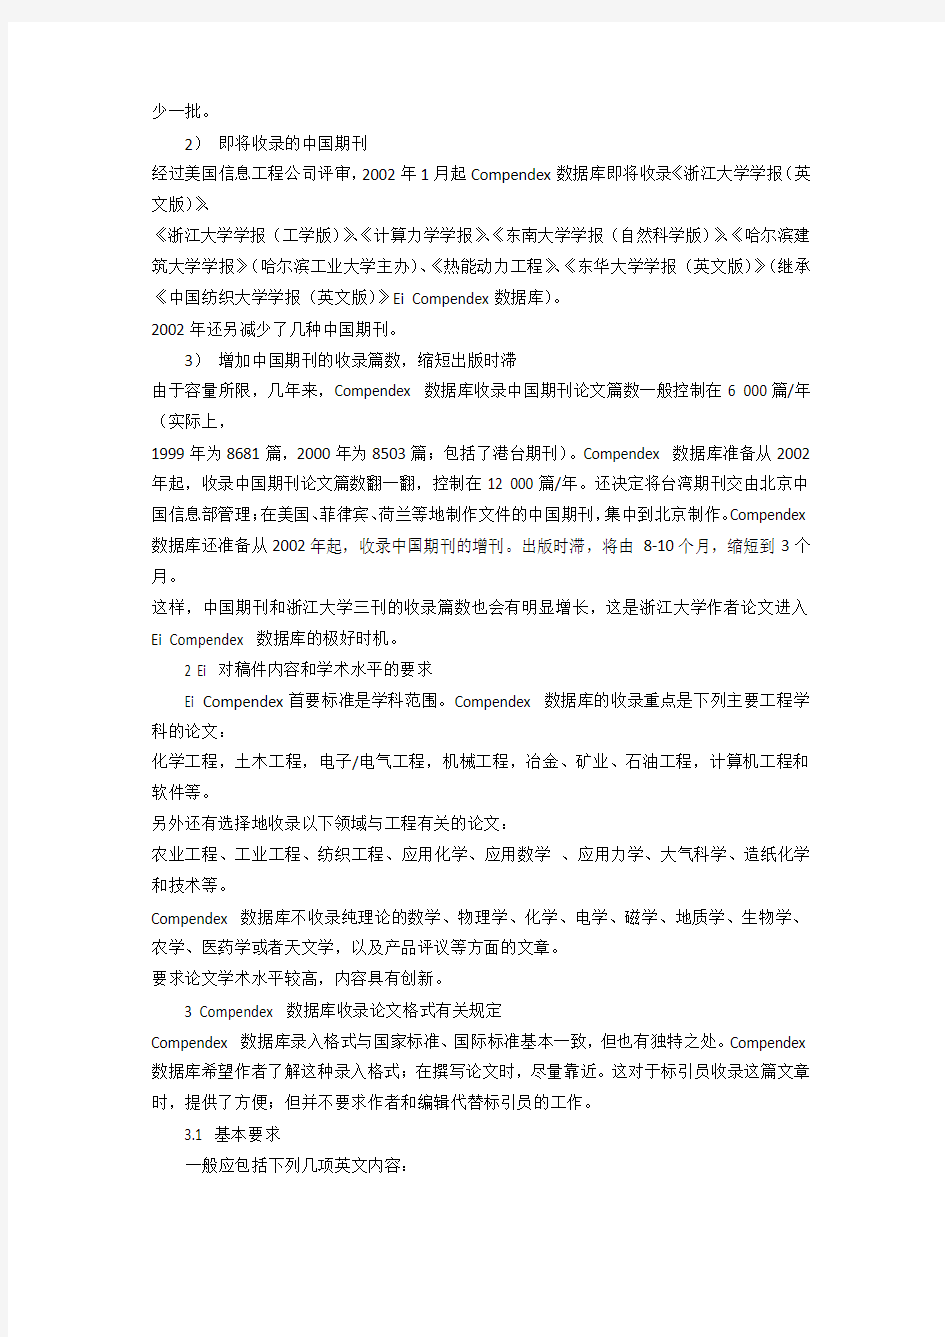 《工程索引EI》收录中国科技论文规定